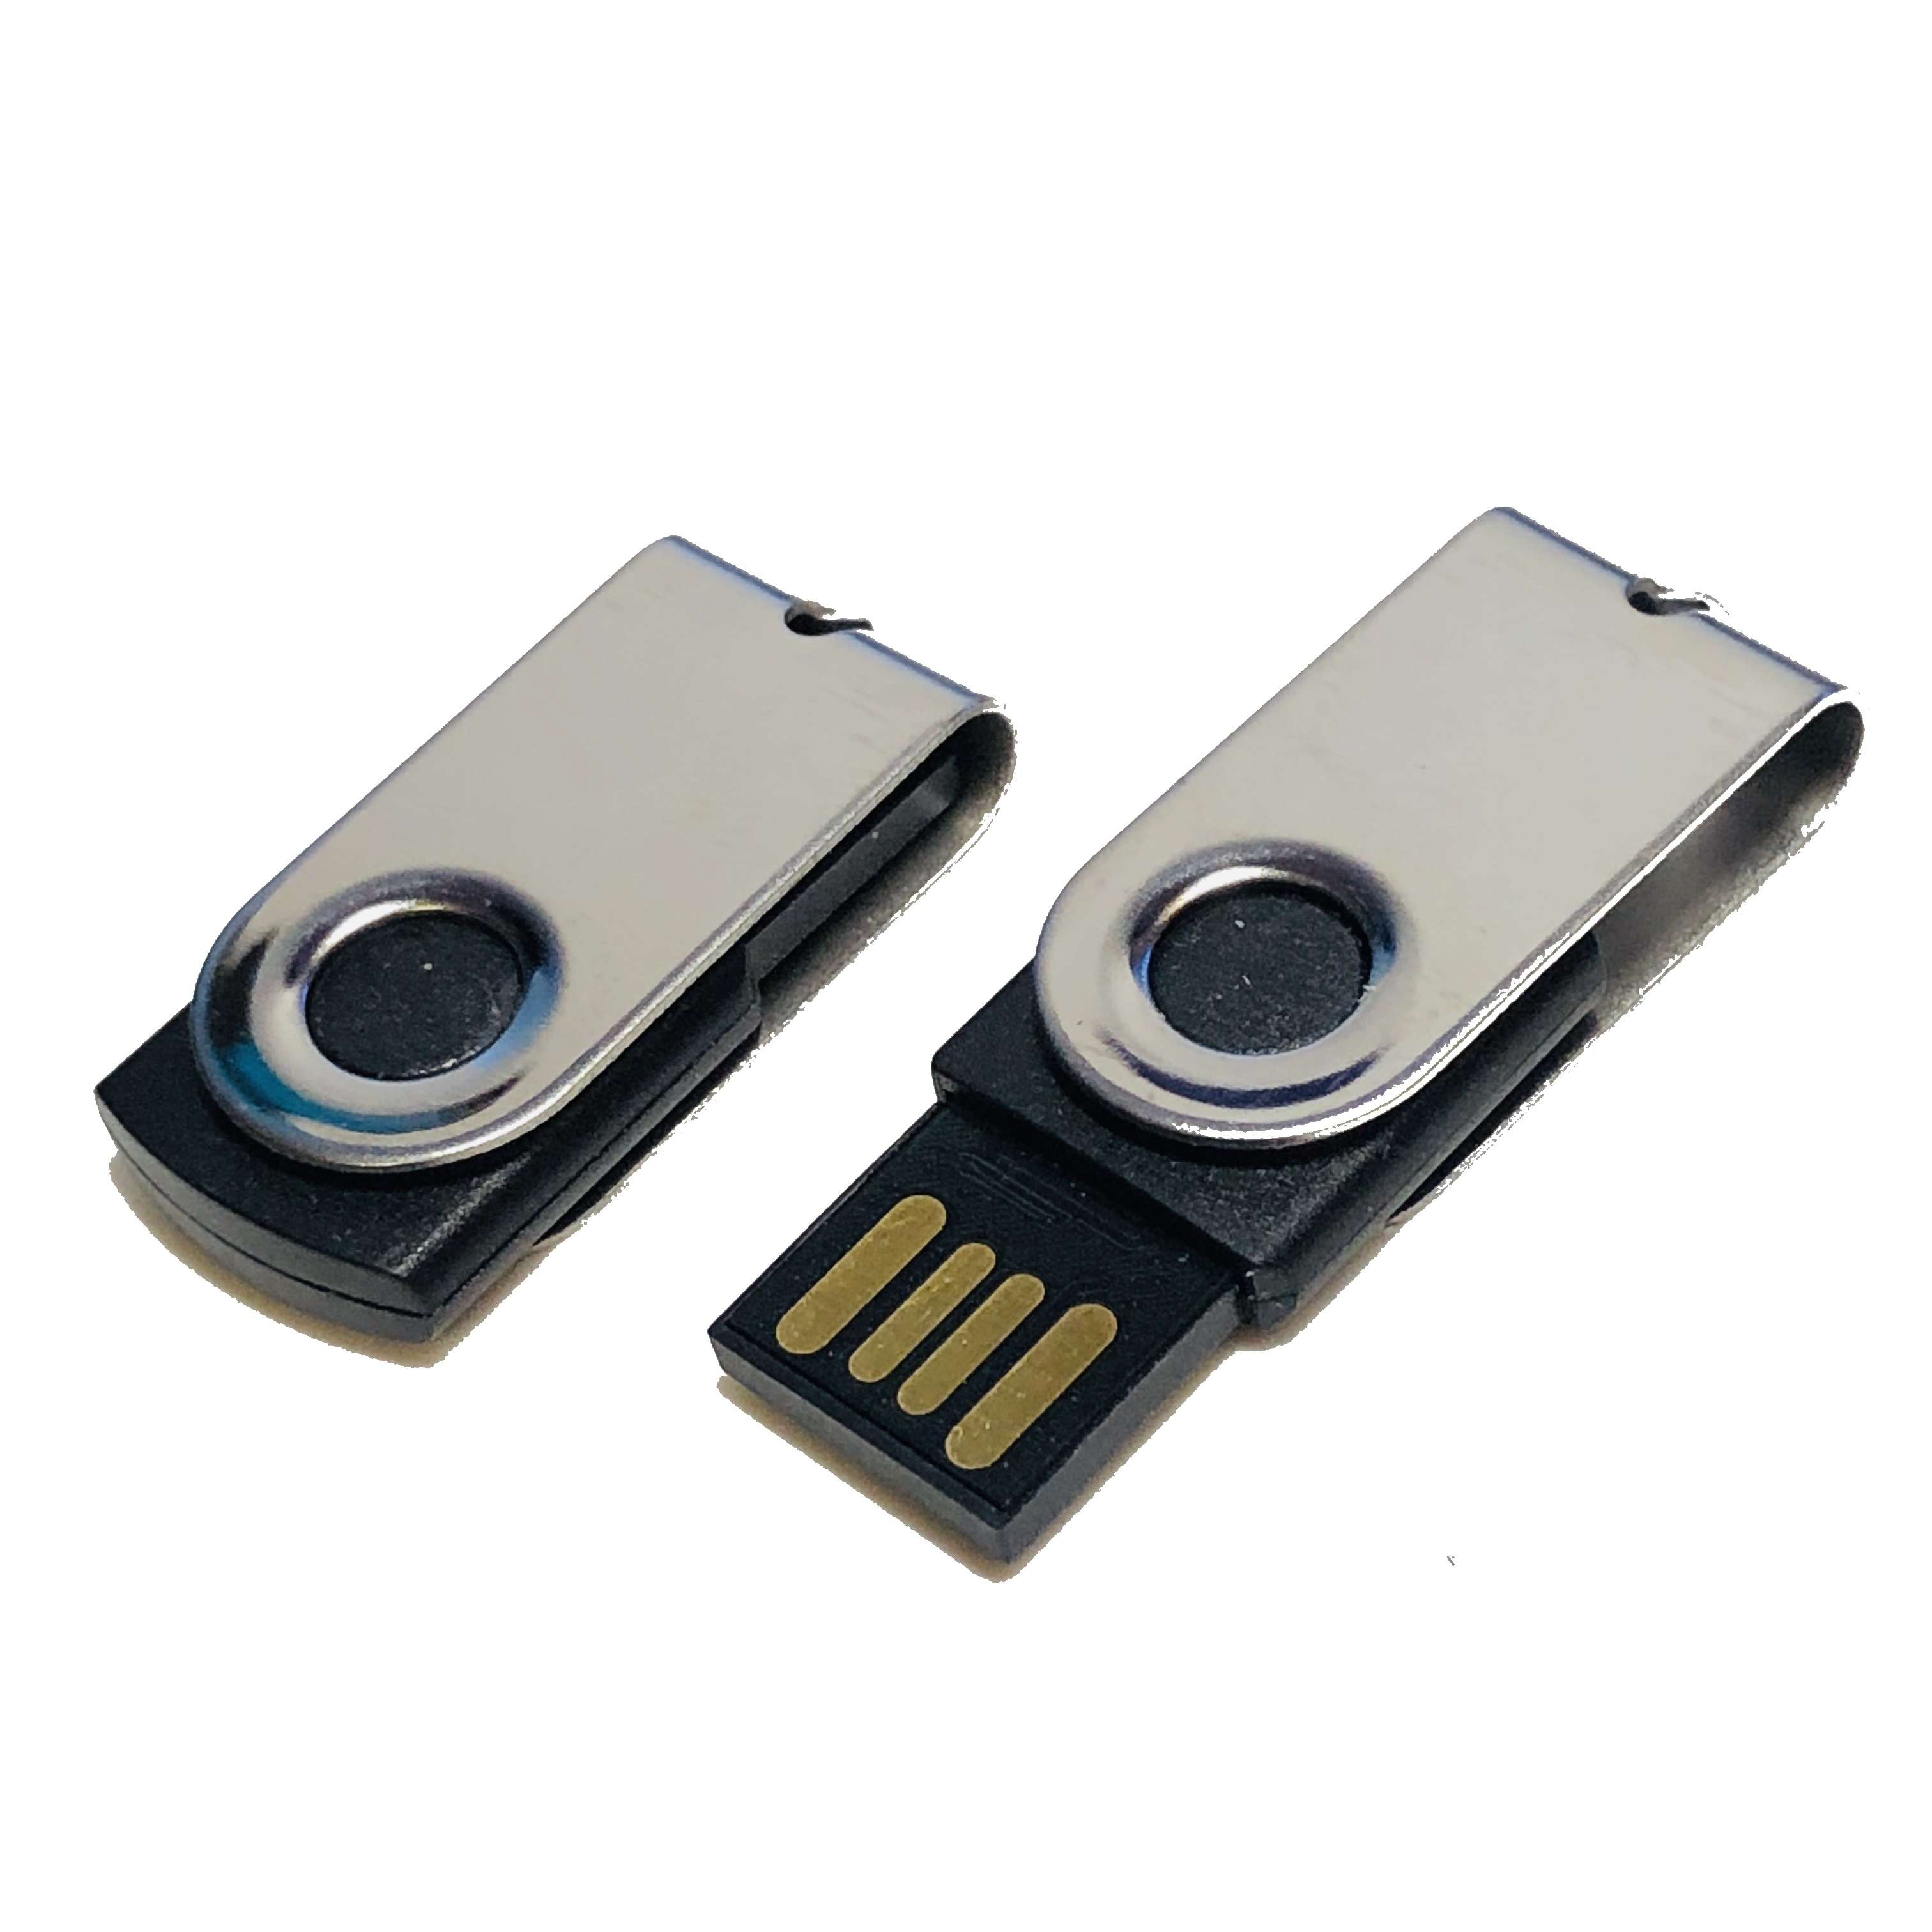 ® GB) 128 USB USB-Stick (Schwarz-Chrome, MINI-SWIVEL GERMANY